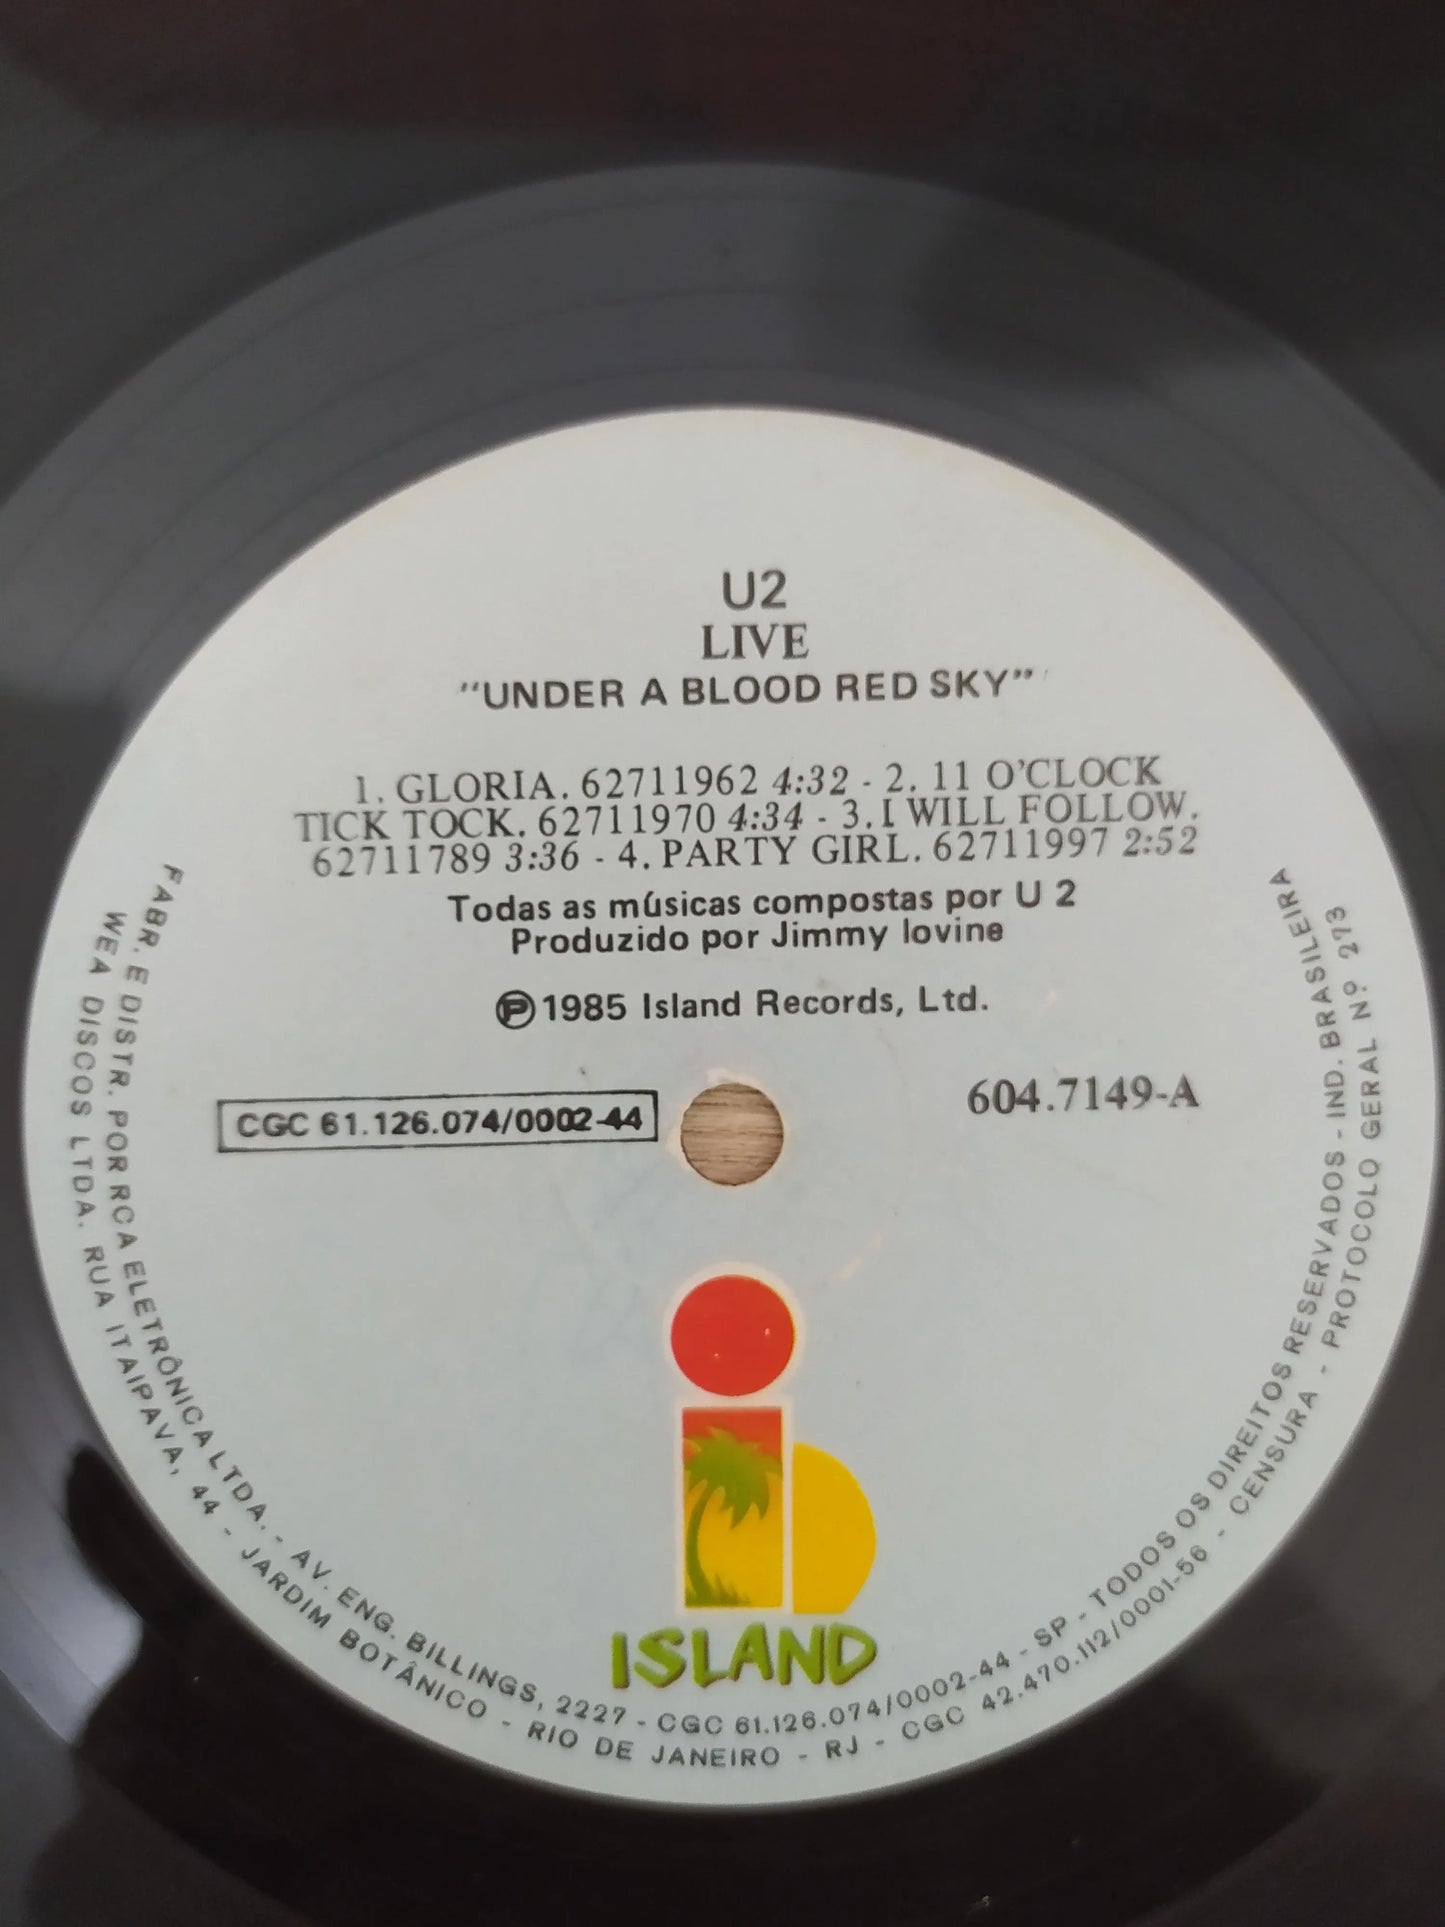 Lp Vinil U2 Live Under A Blood Red Sky